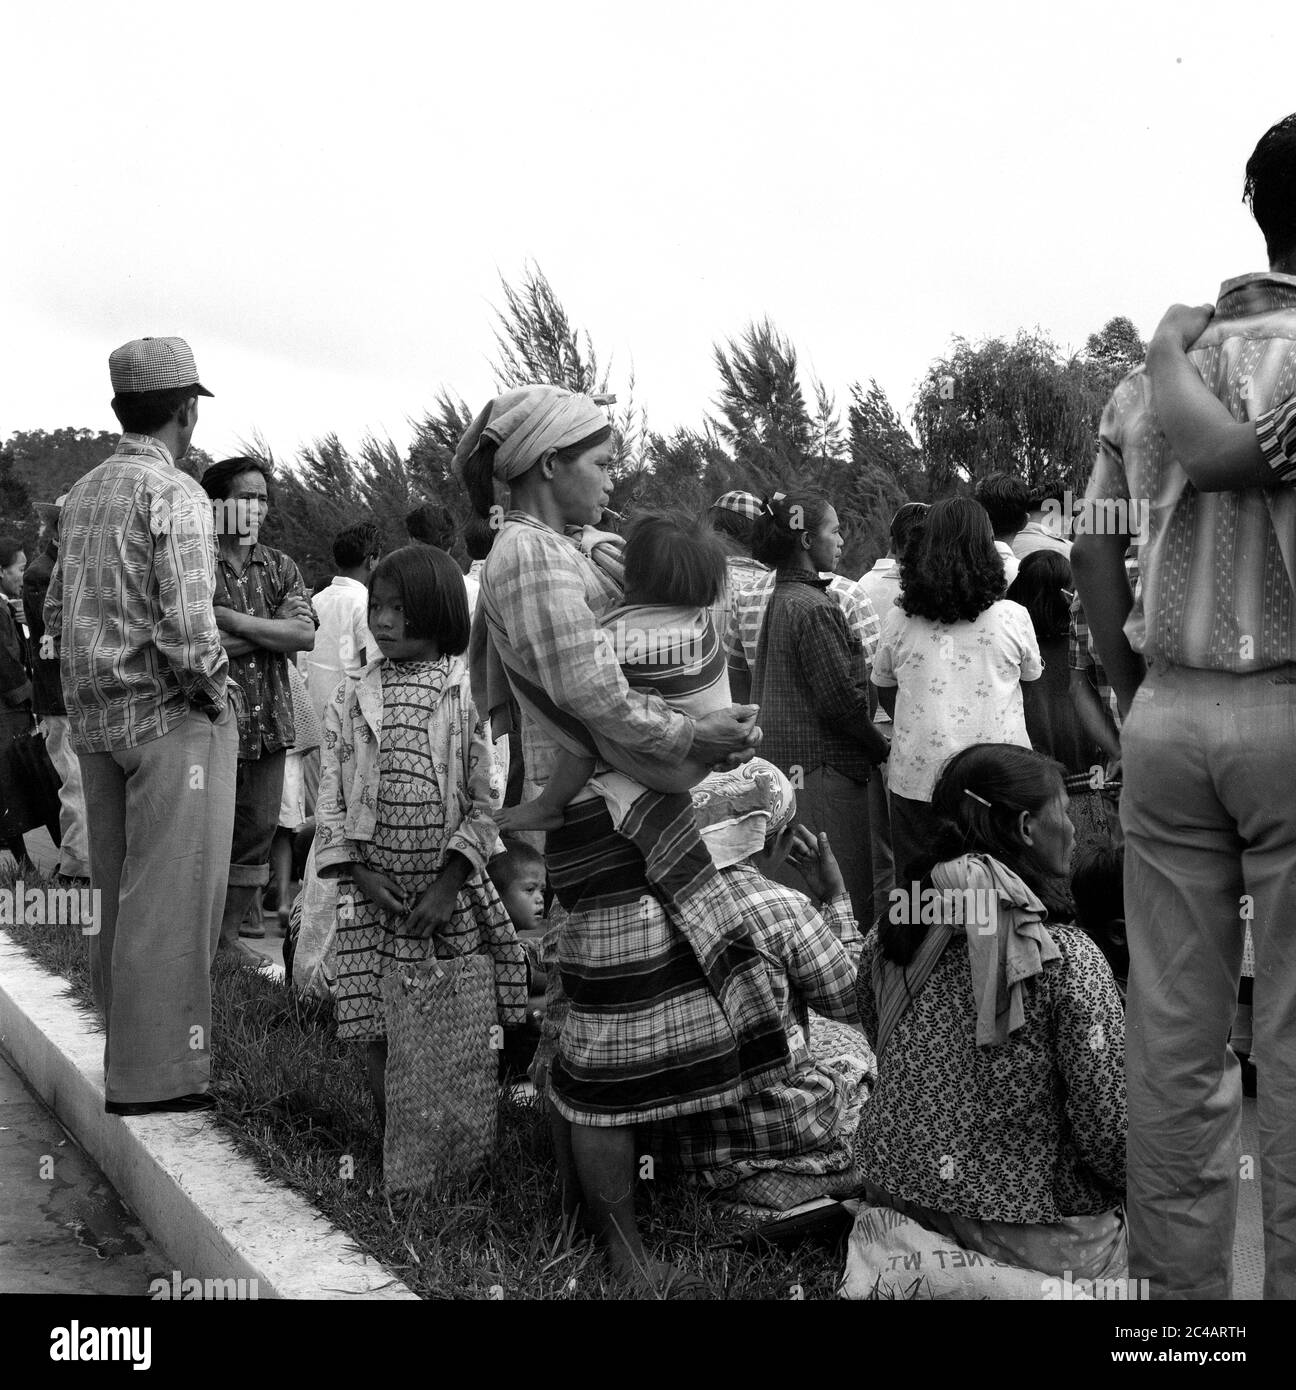 Menge von Menschen, die auf einen Bus warten 1959 Personen Straßenszene, Baguio City, Philippinen, mit Mutter, die einen Cheroot im Halter raucht, während sie ein Kind hält. Stockfoto